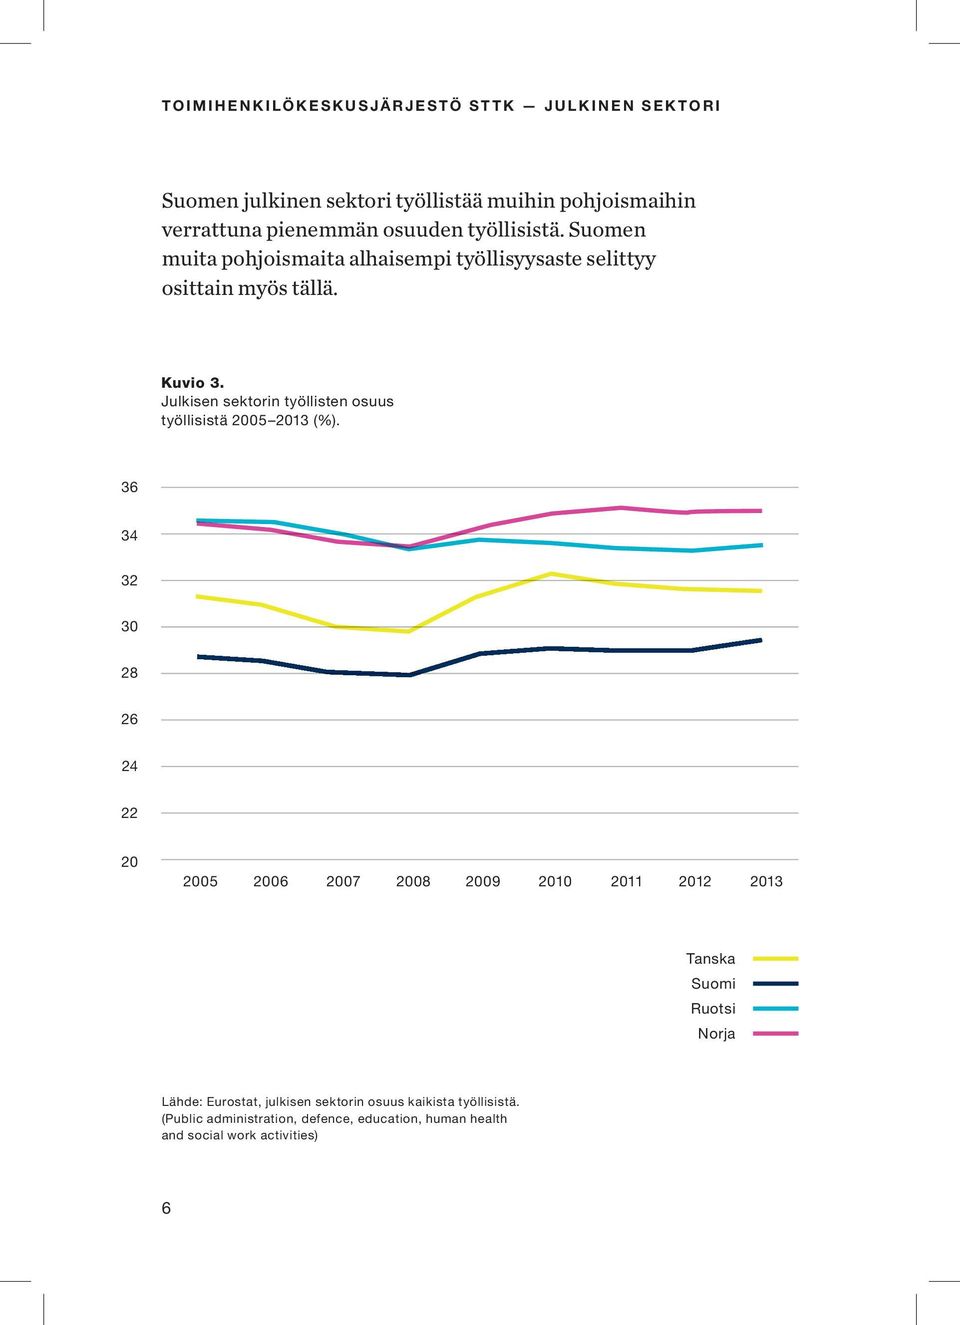 Julkisen sektorin työllisten osuus työllisistä 2005 2013 (%).